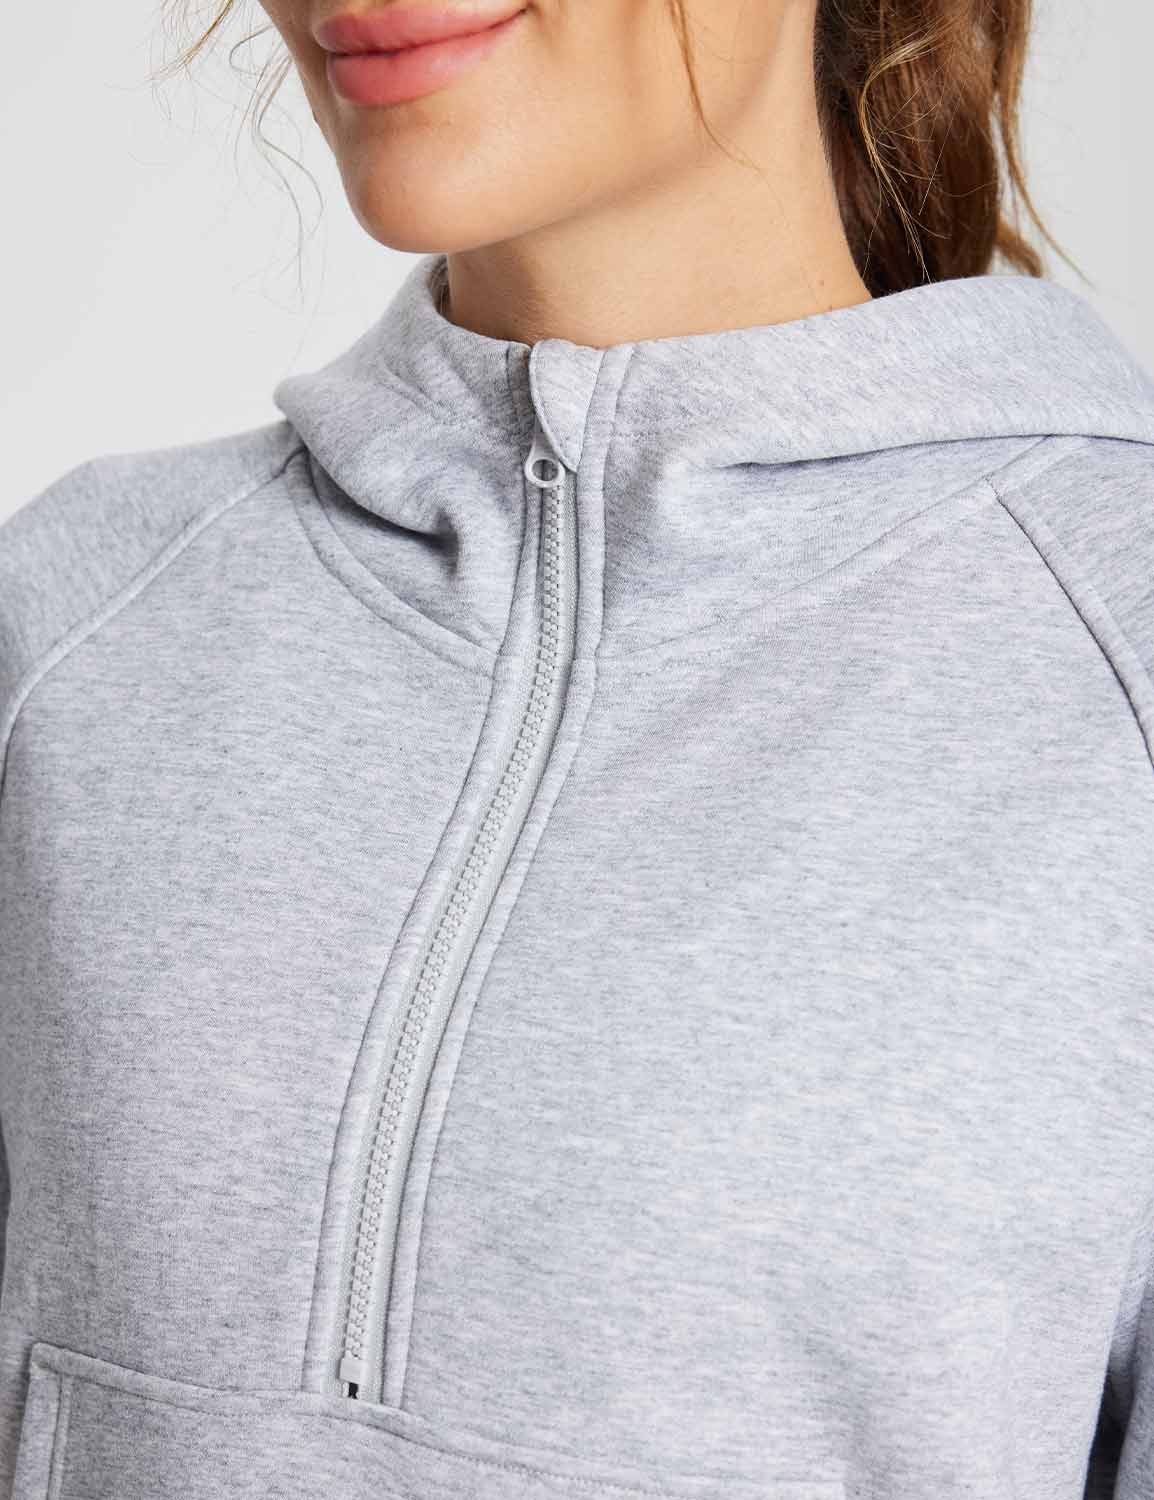 Baleaf Women's Evergreen Cotton Half-Zip Pullover dbd091 Light Grey Details